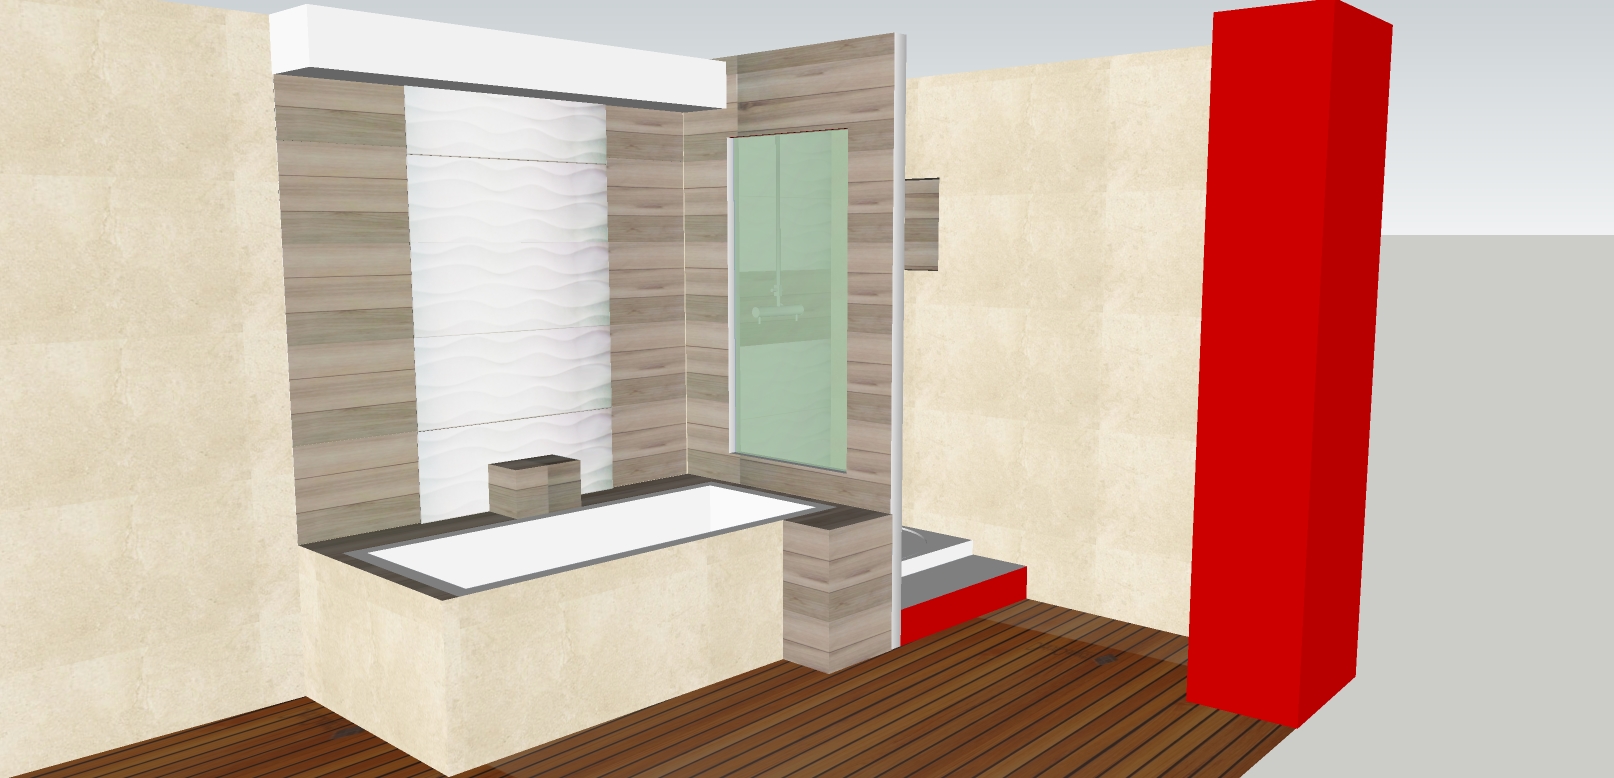 Inserer une vitre dans une cloison de douche en placo | Forum Isolation -  Cloisons / Plafonds - Forum Système D